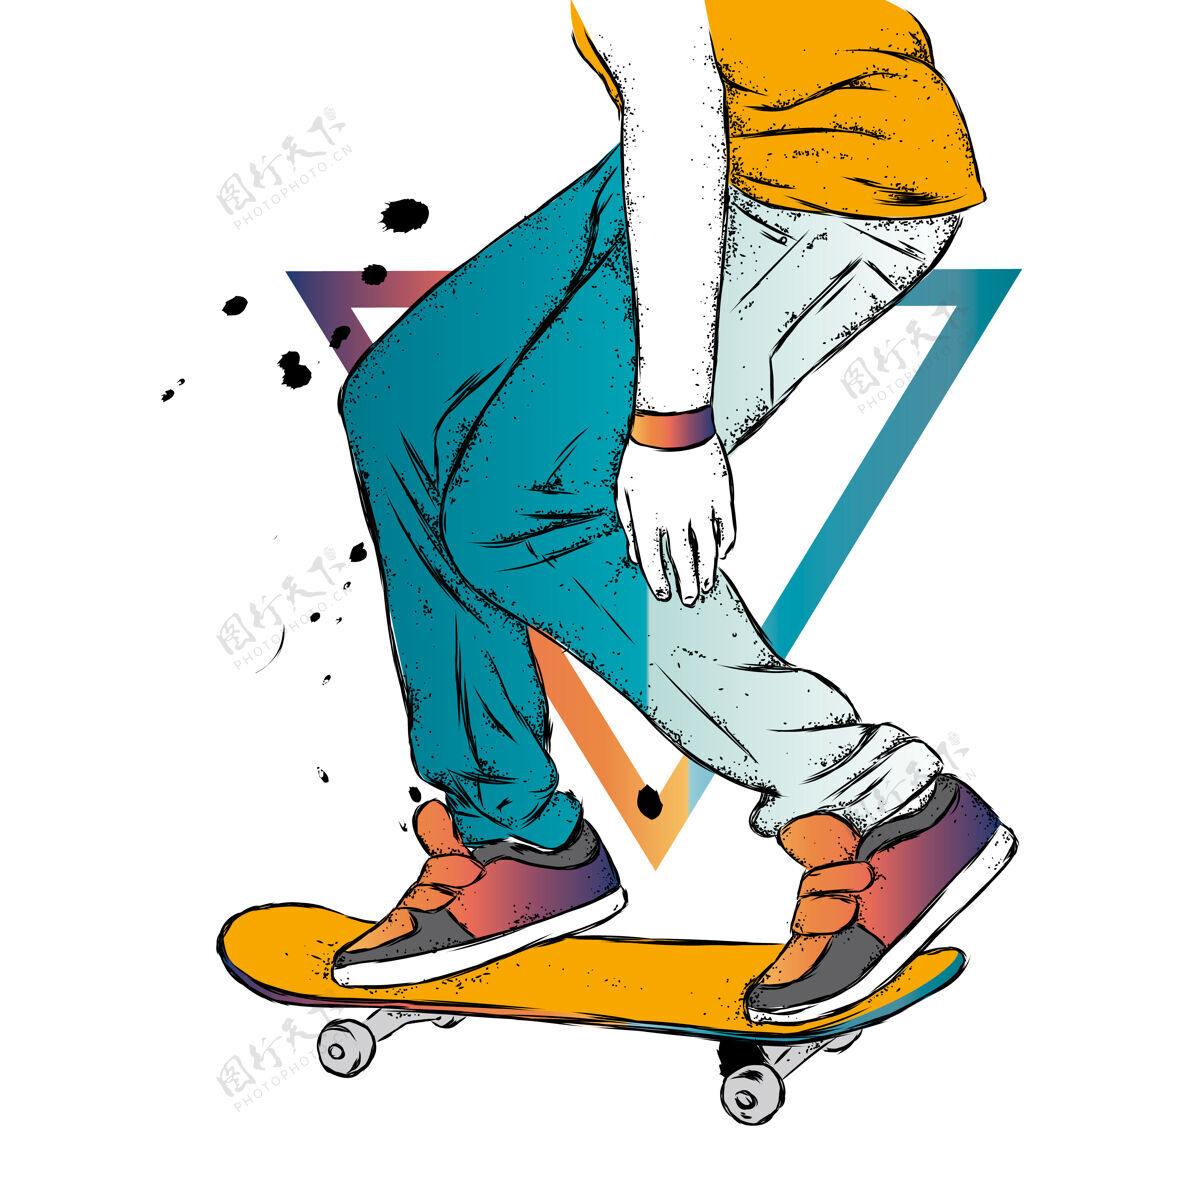 男人滑板手和滑板运动时尚款式